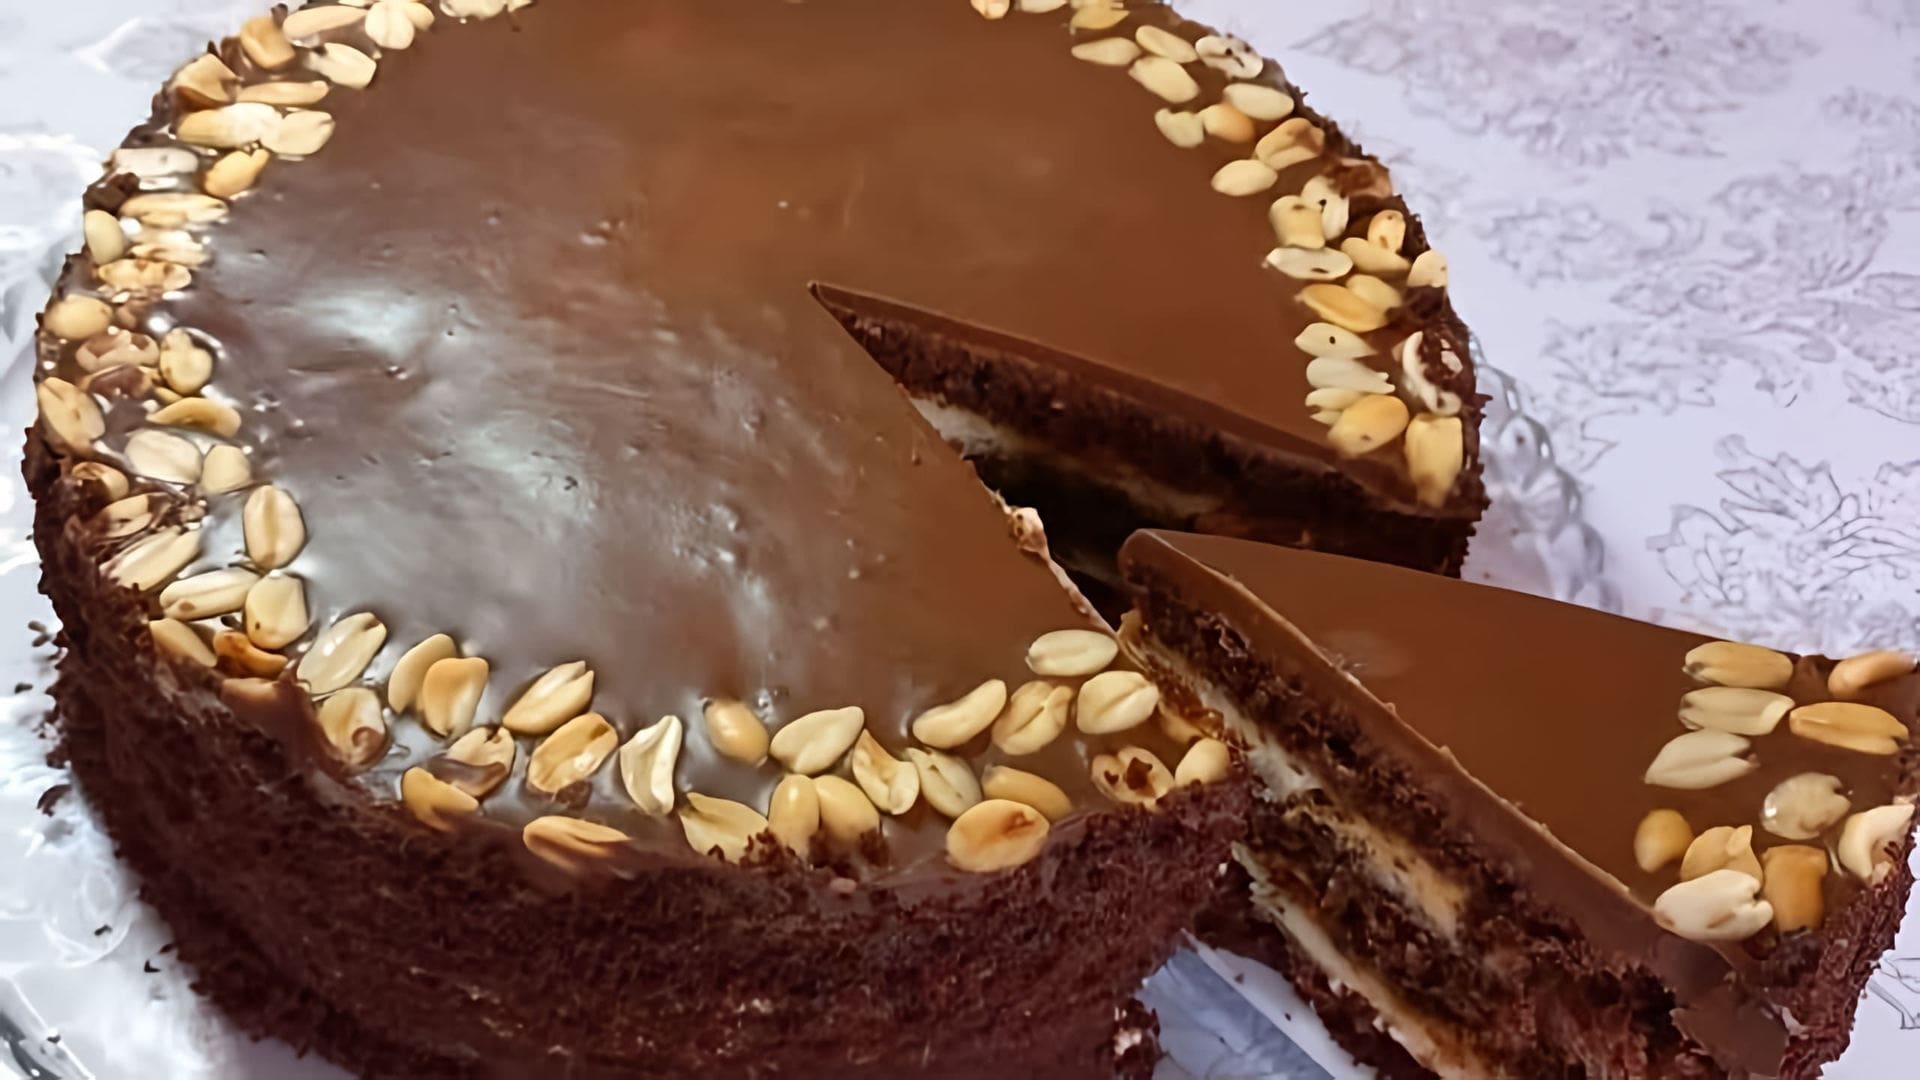 В этом видео демонстрируется рецепт приготовления шоколадного торта, напоминающего по вкусу торт "Сникерс"